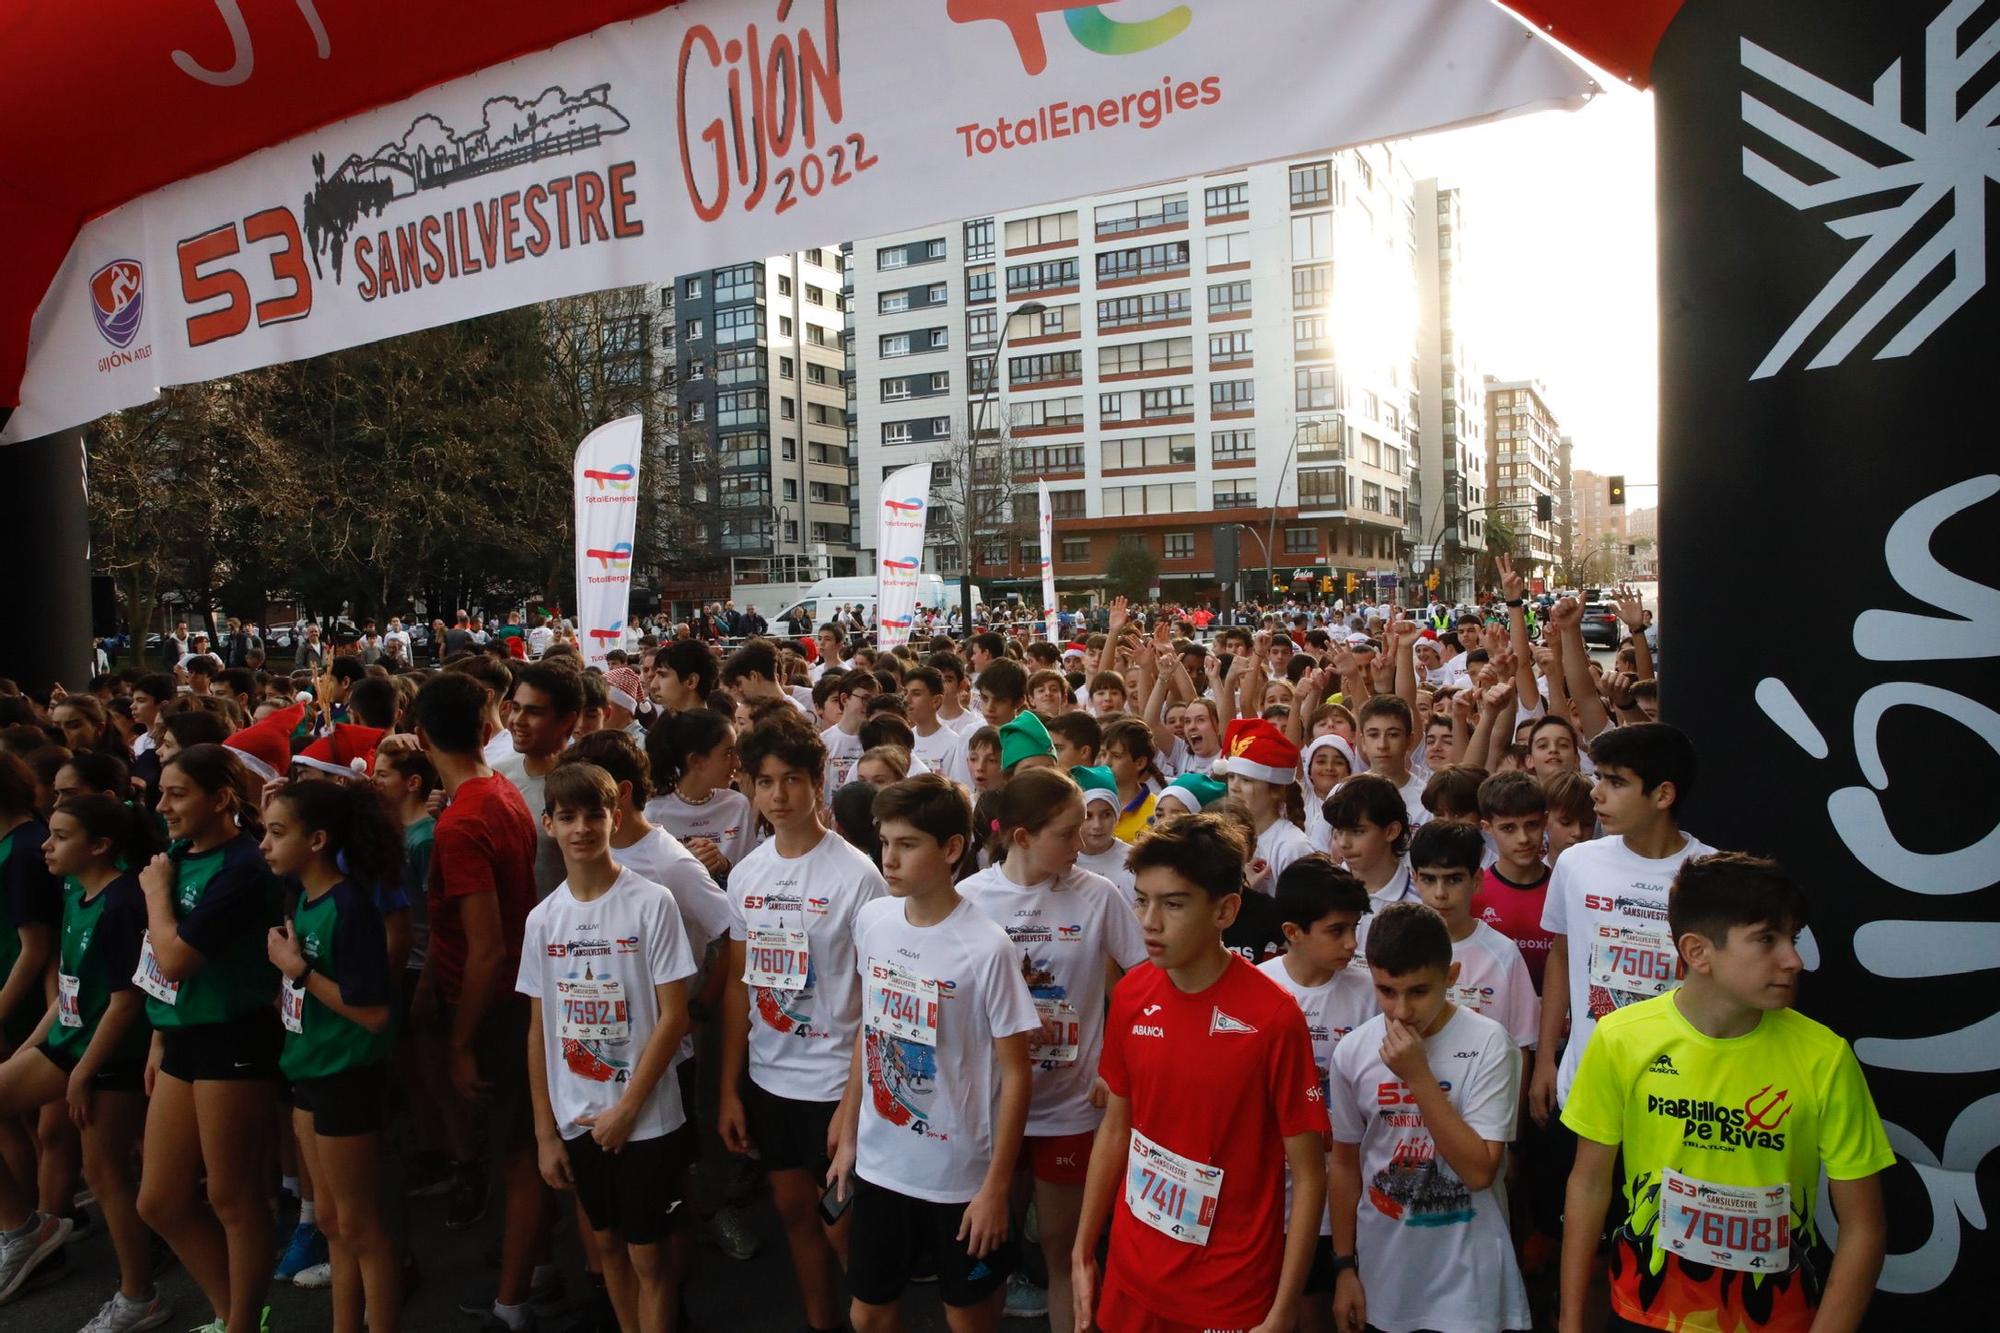 En imágenes: más de 7.000 corredores participaron en la San Silvestre de Gijón